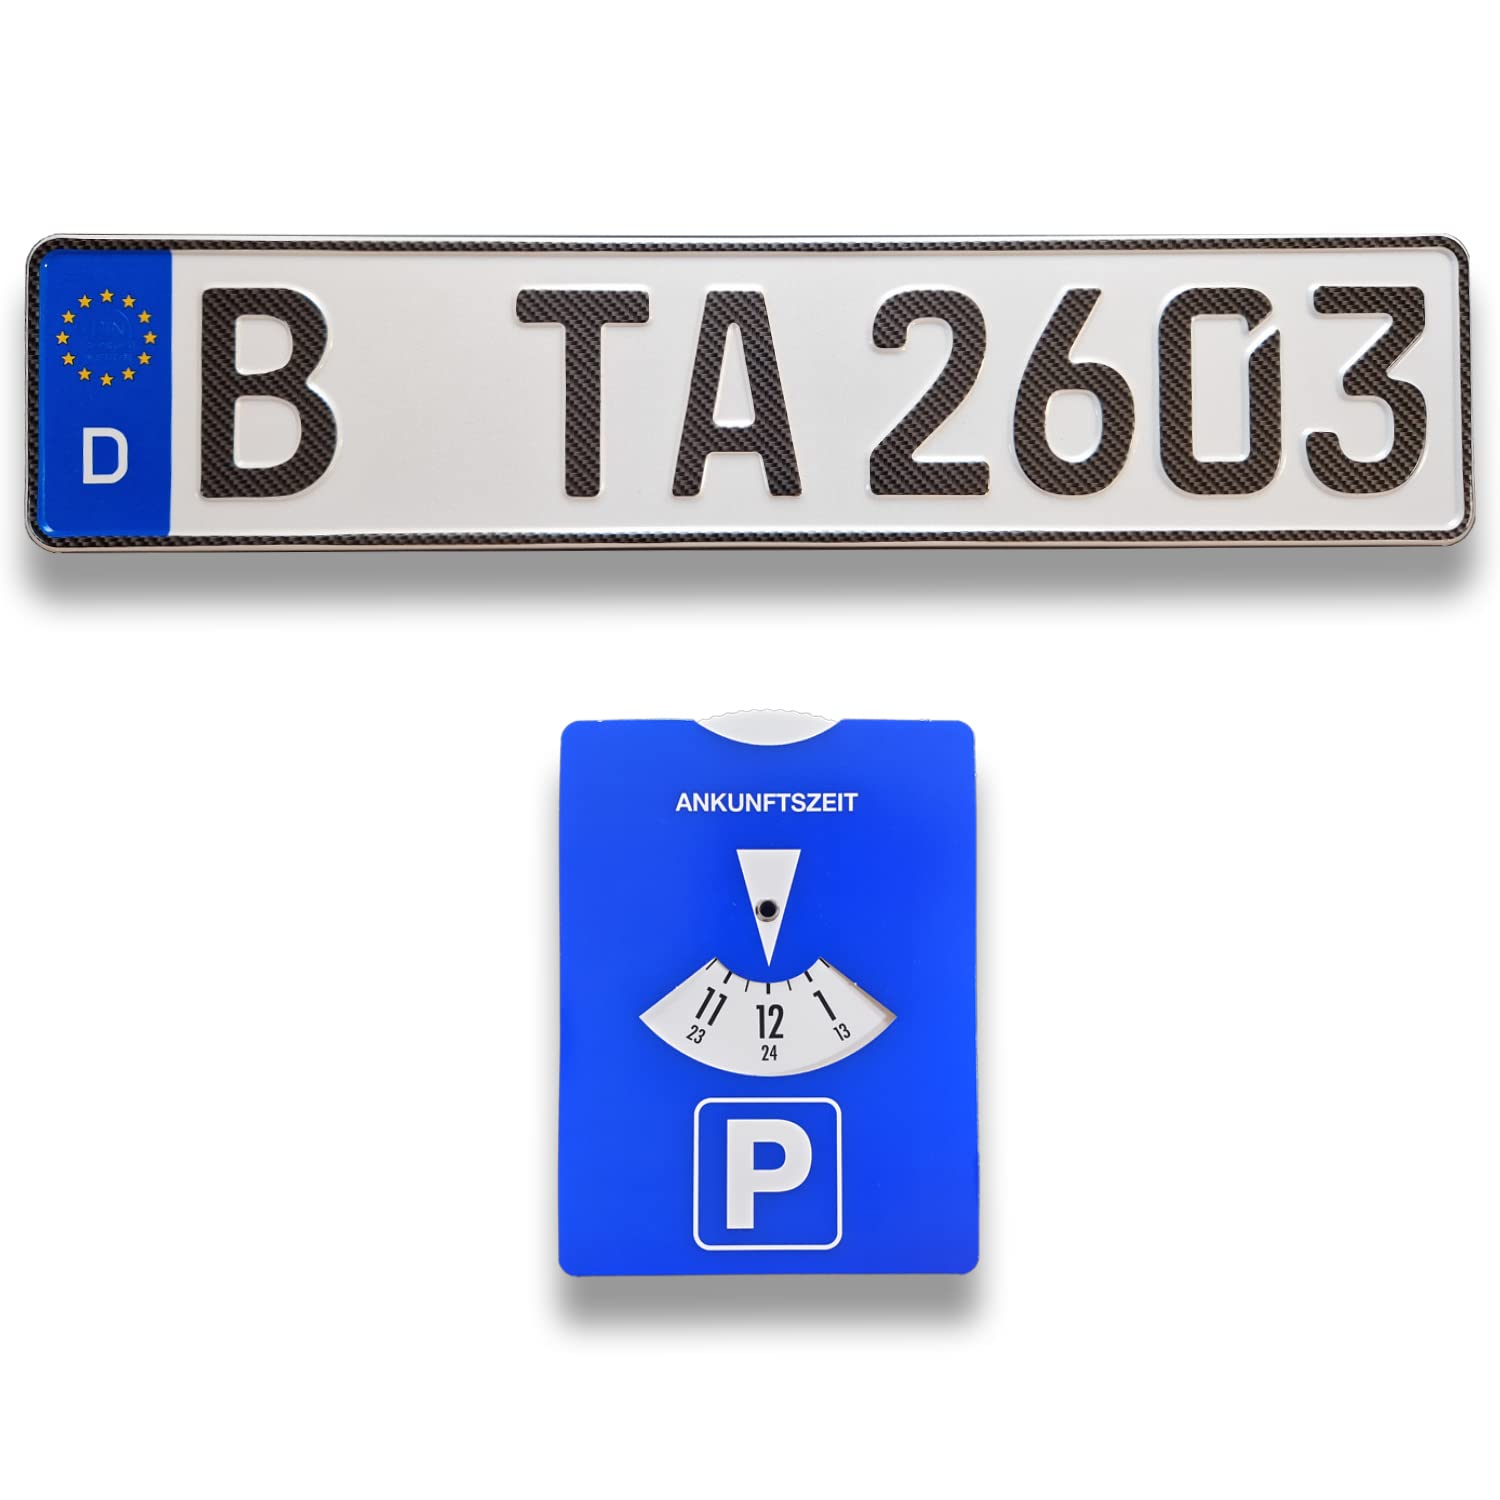 1 DIN-zertifiziertes Kfz-Kennzeichen in Carbon-Optik in der Standard-Größe 520x110 mm inklusive Parkscheibe passend für alle Deutschen Fahrzeuge (1 Kennzeichen Carbon-Optik) von TA TradeArea